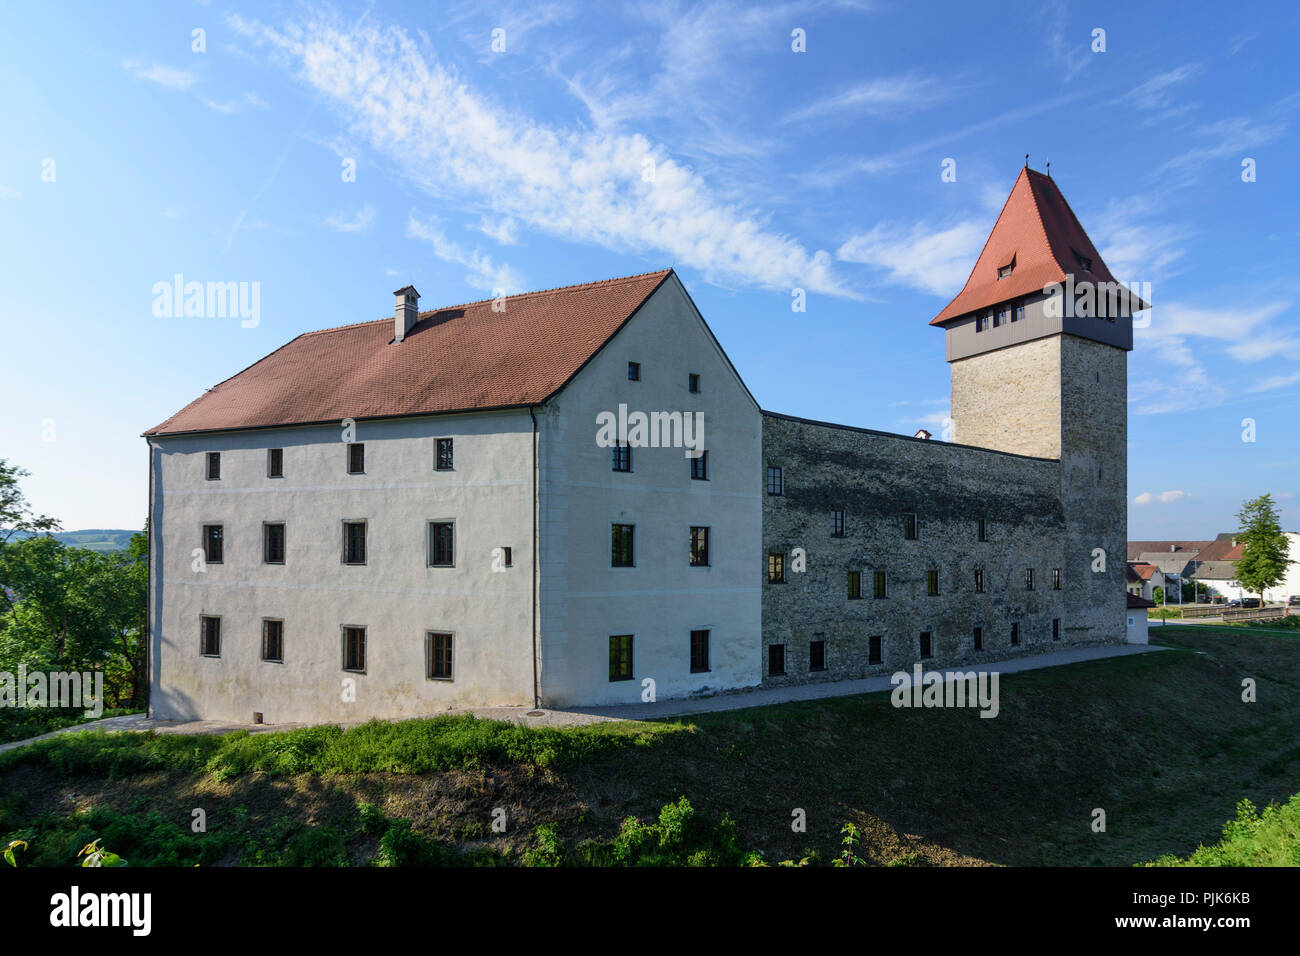 Ulmerfeld, castello Schloss Ulmerfeld in bassa Austria (Niederösterreich), Mostviertel regione Foto Stock